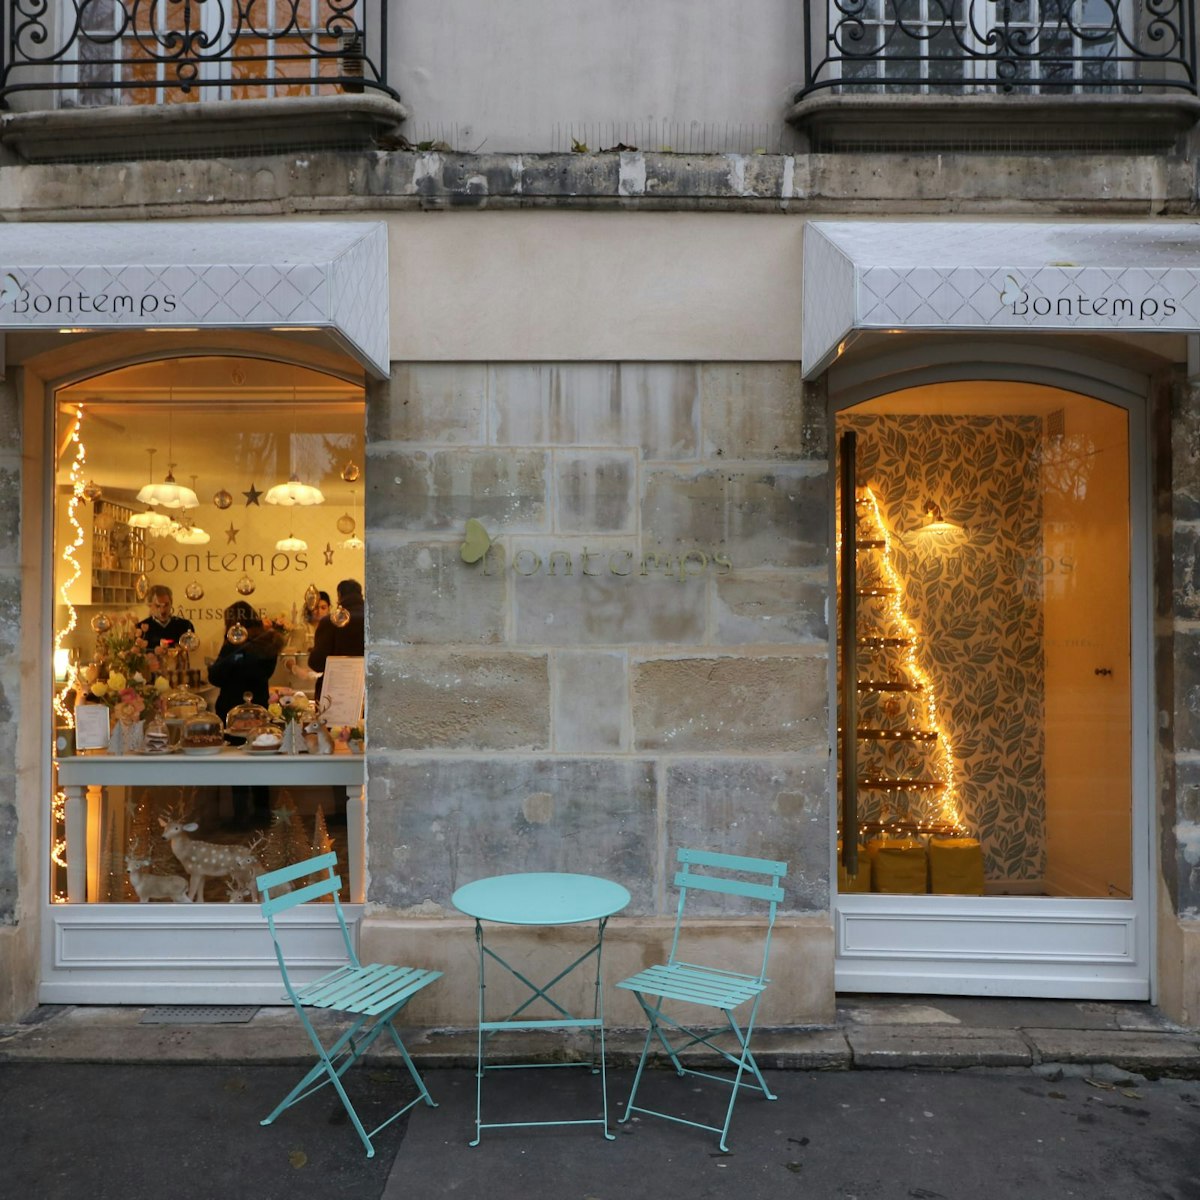 Bontemps Pâtisserie exterior (façade)